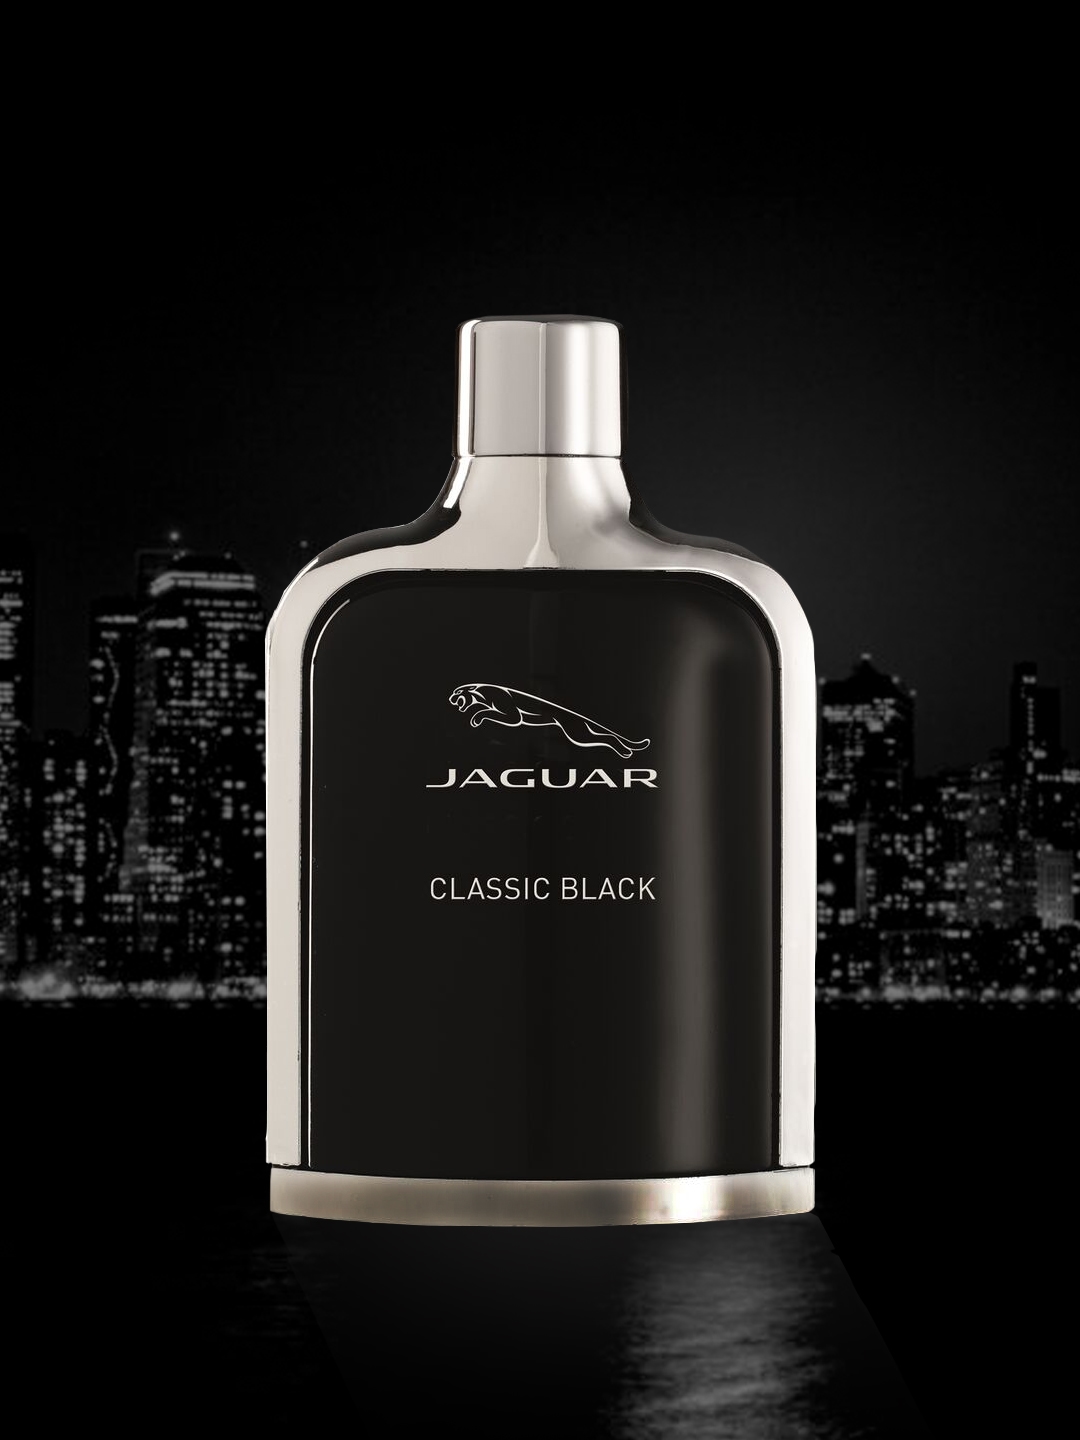 For 924/-(72% Off) JAGUAR Men Classic Black Eau De Toilette 100 ml at Myntra